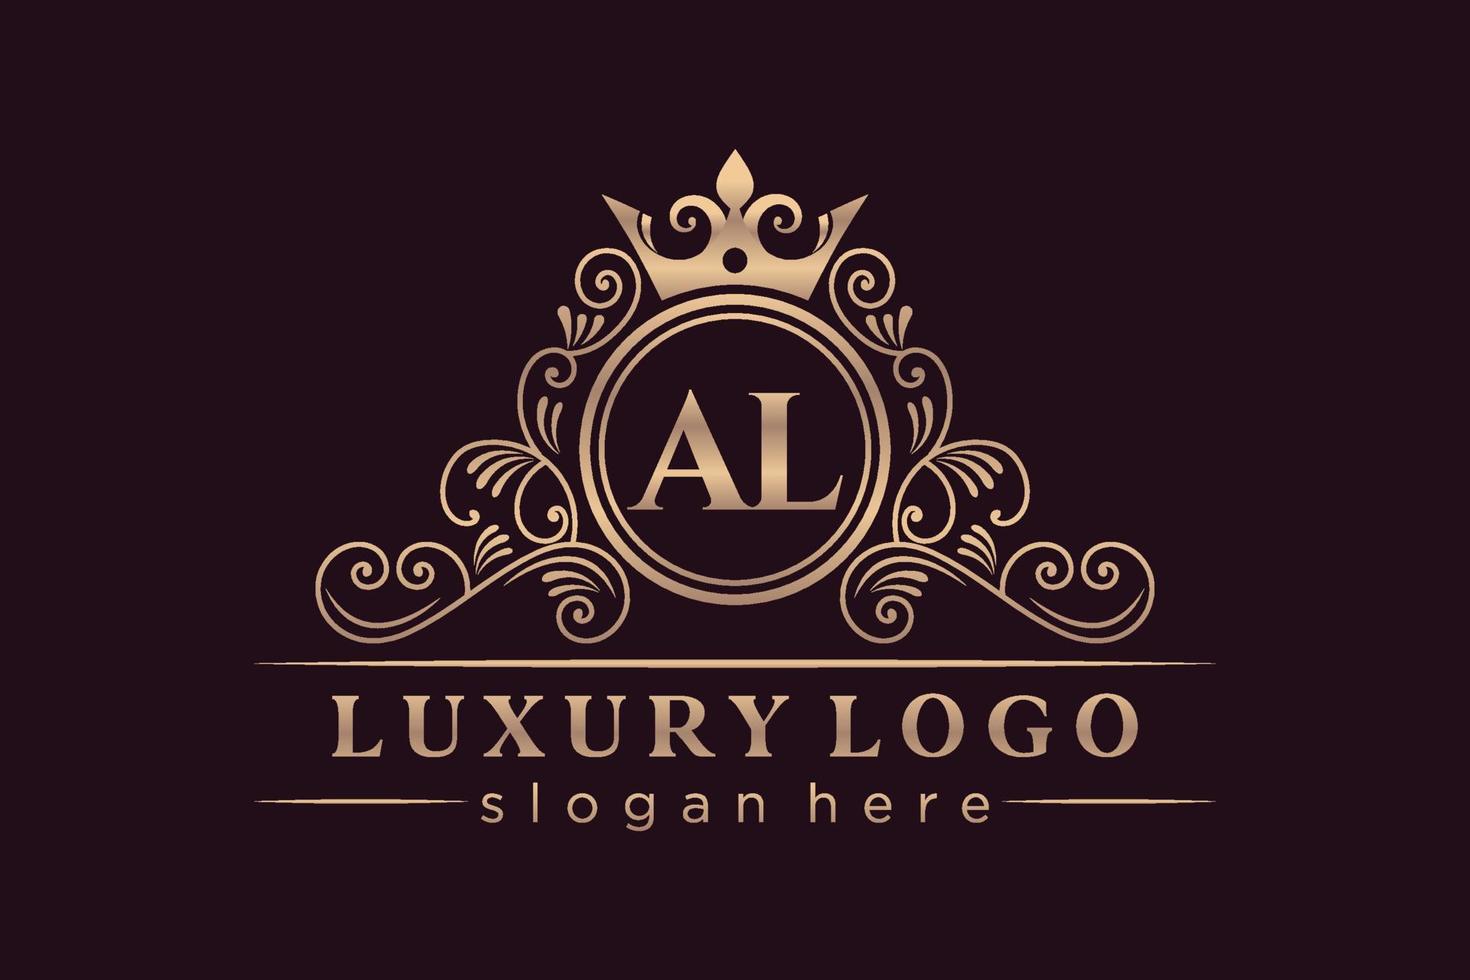 al anfangsbuchstabe gold kalligrafisch feminin floral handgezeichnet heraldisch monogramm antik vintage stil luxus logo design premium vektor